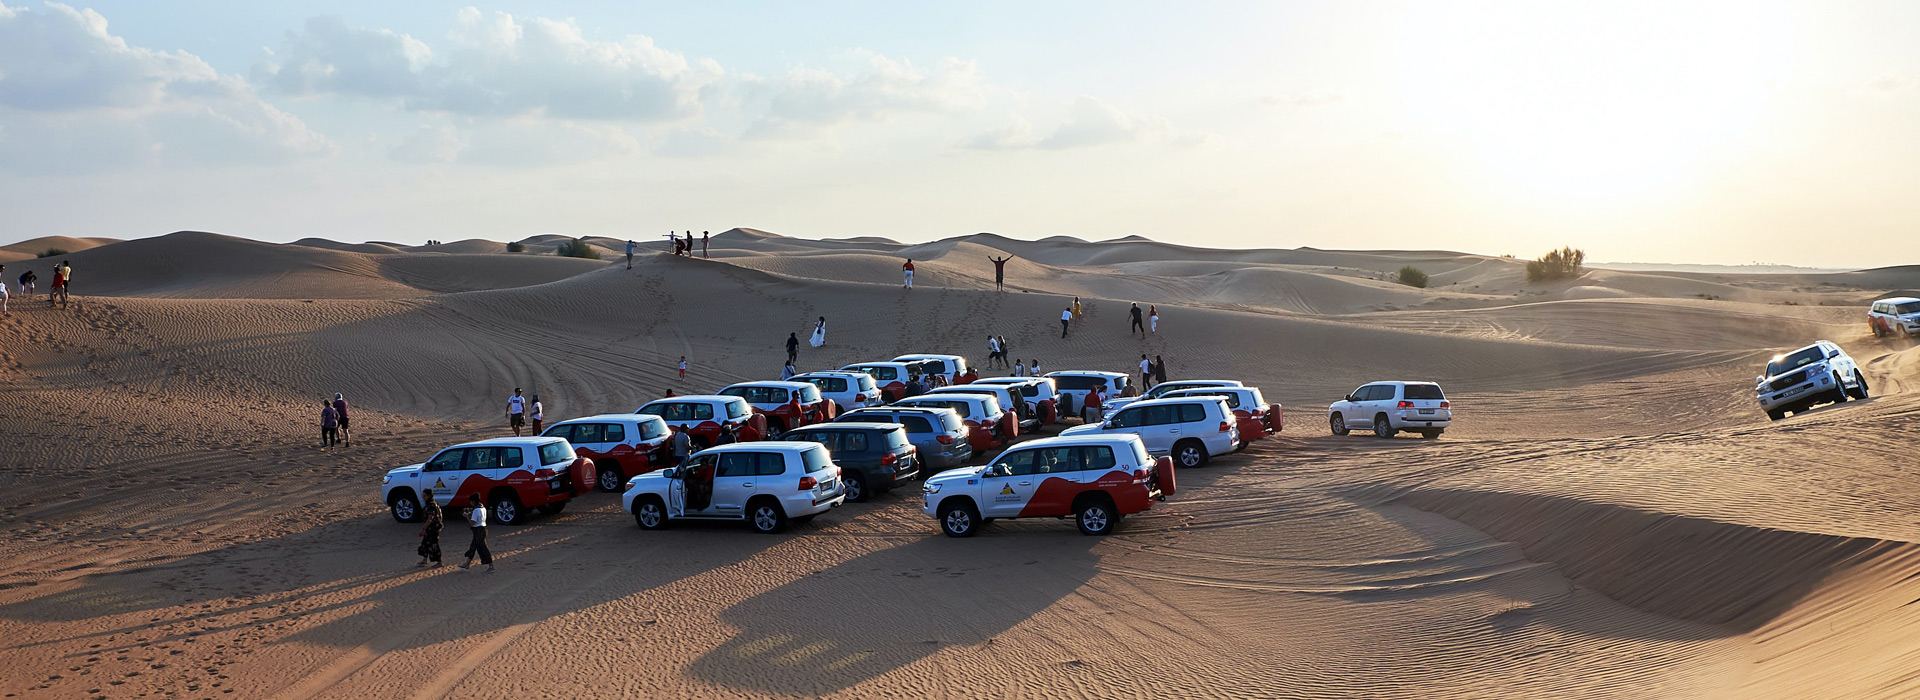 Desert safari Abu Dhabi | Royal